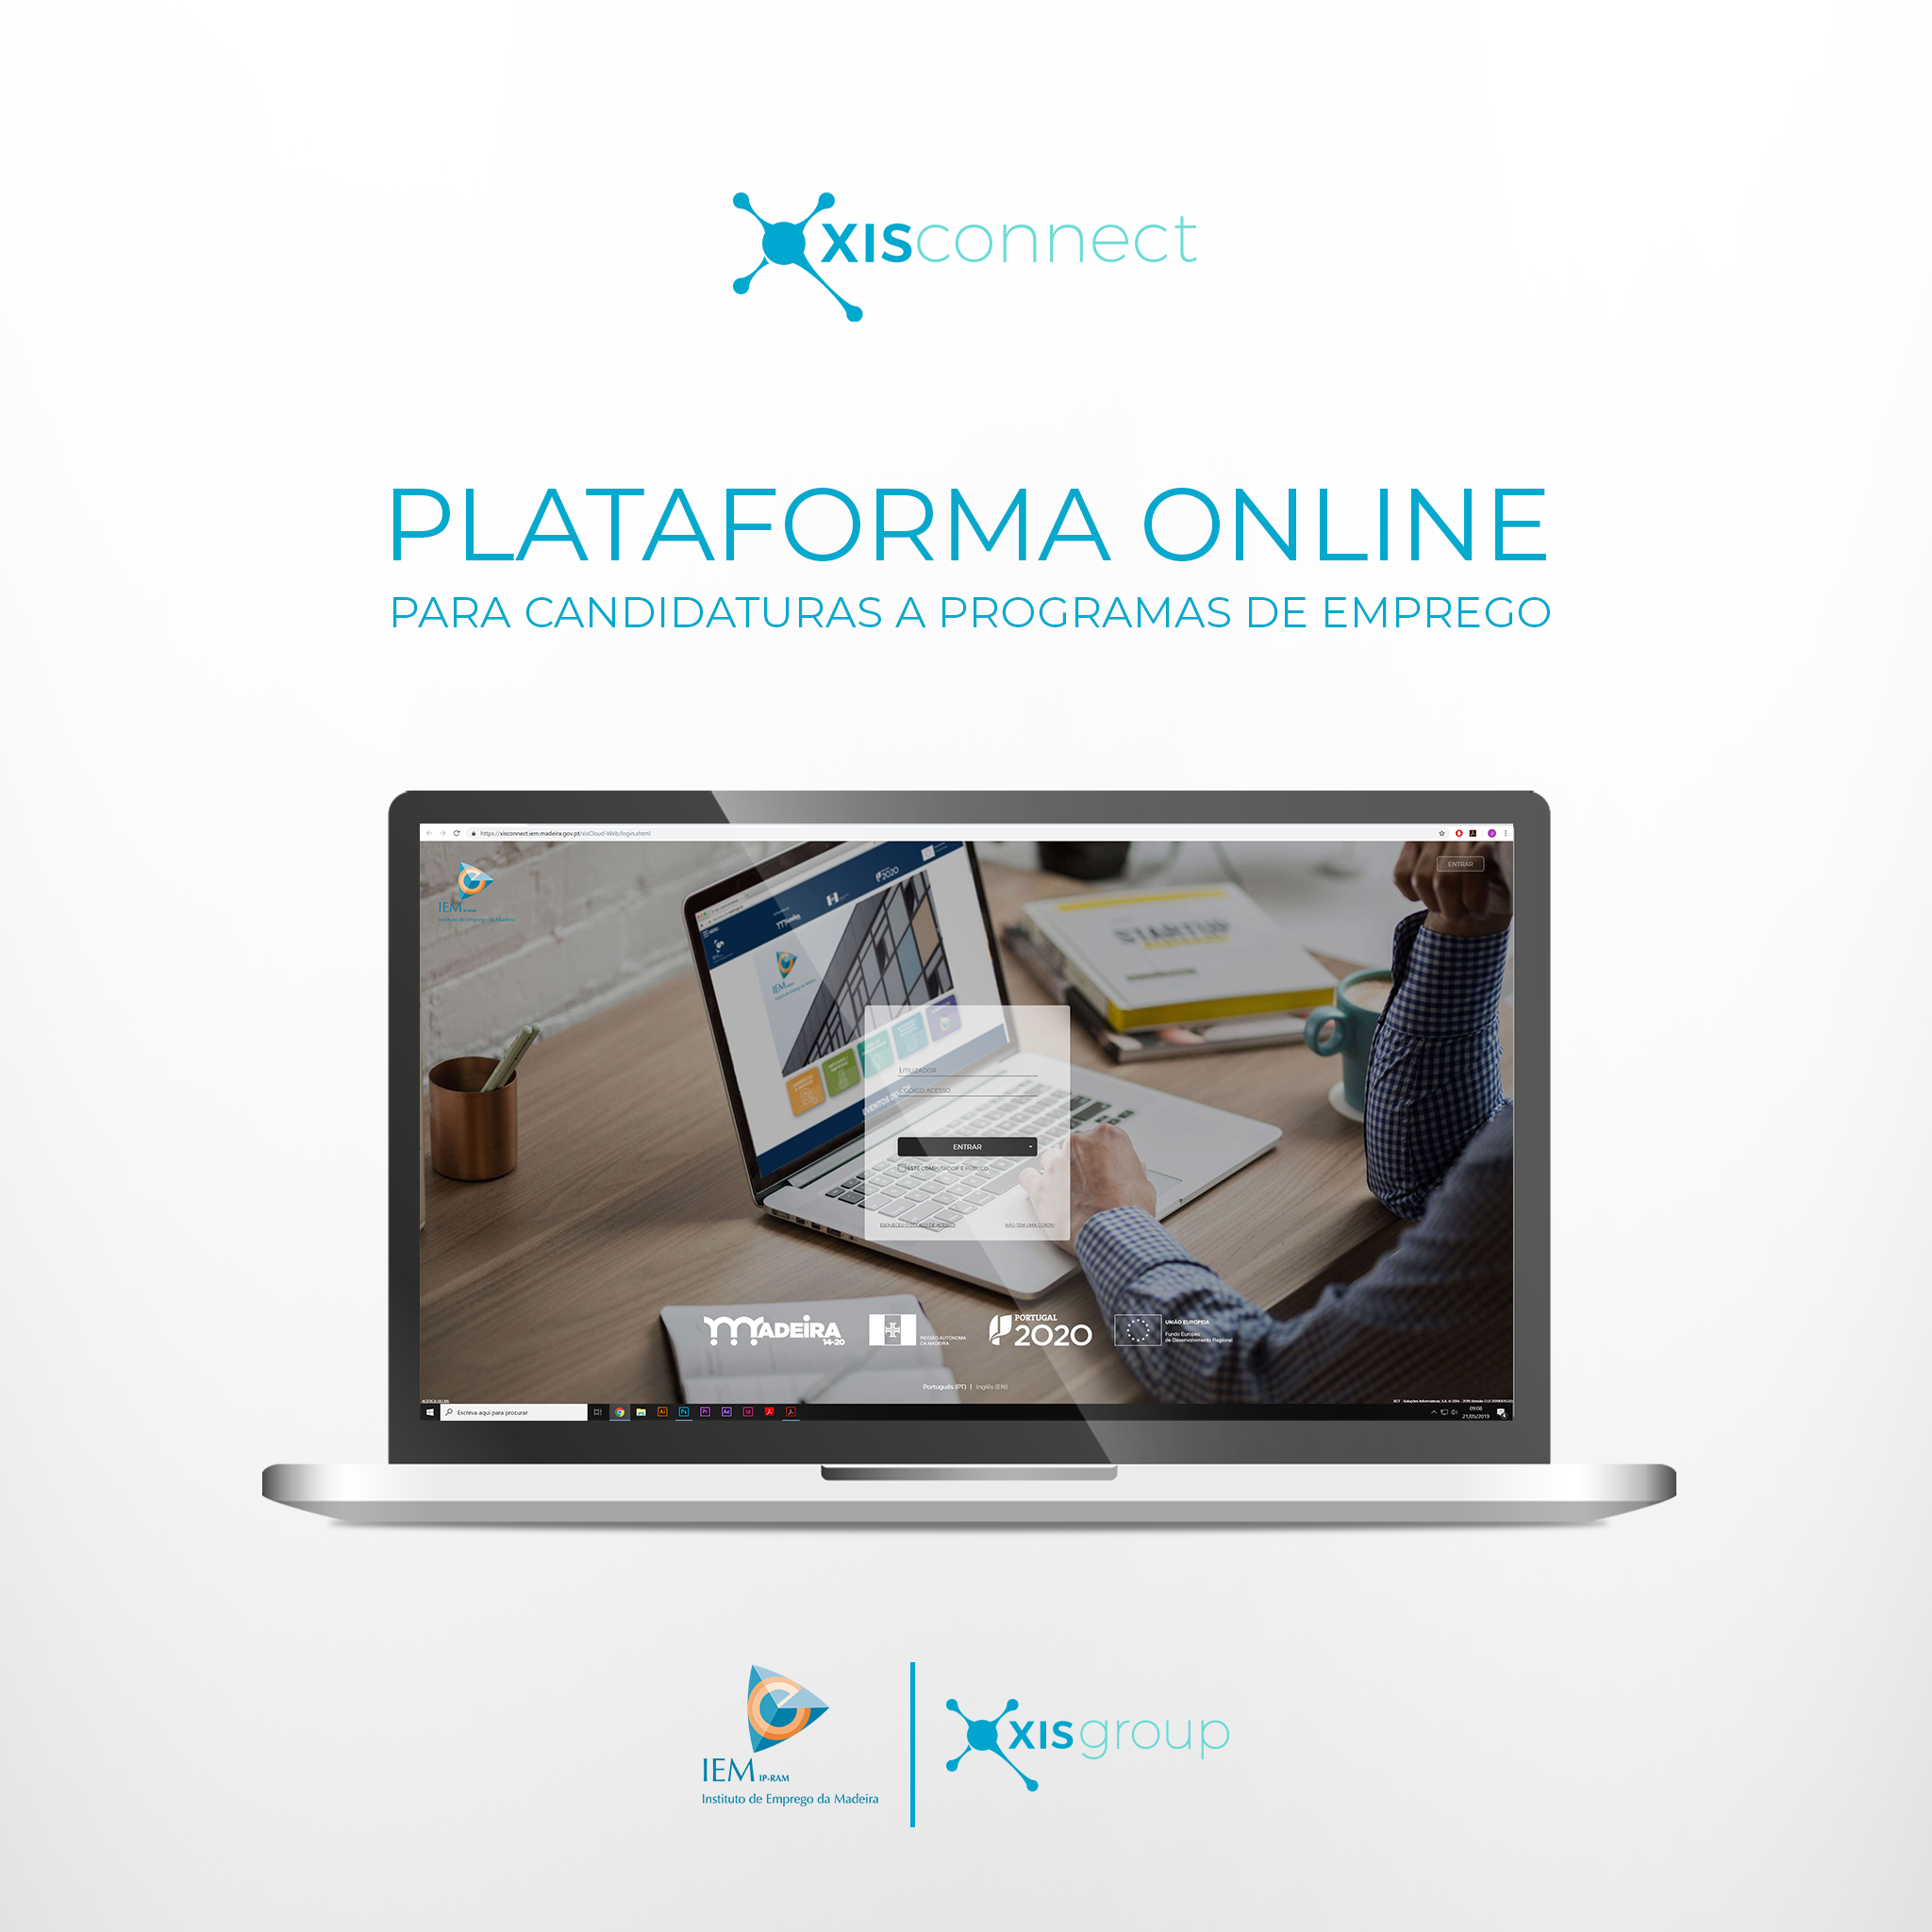 XIS Connect – Plataforma Online para candidaturas a programas de emprego